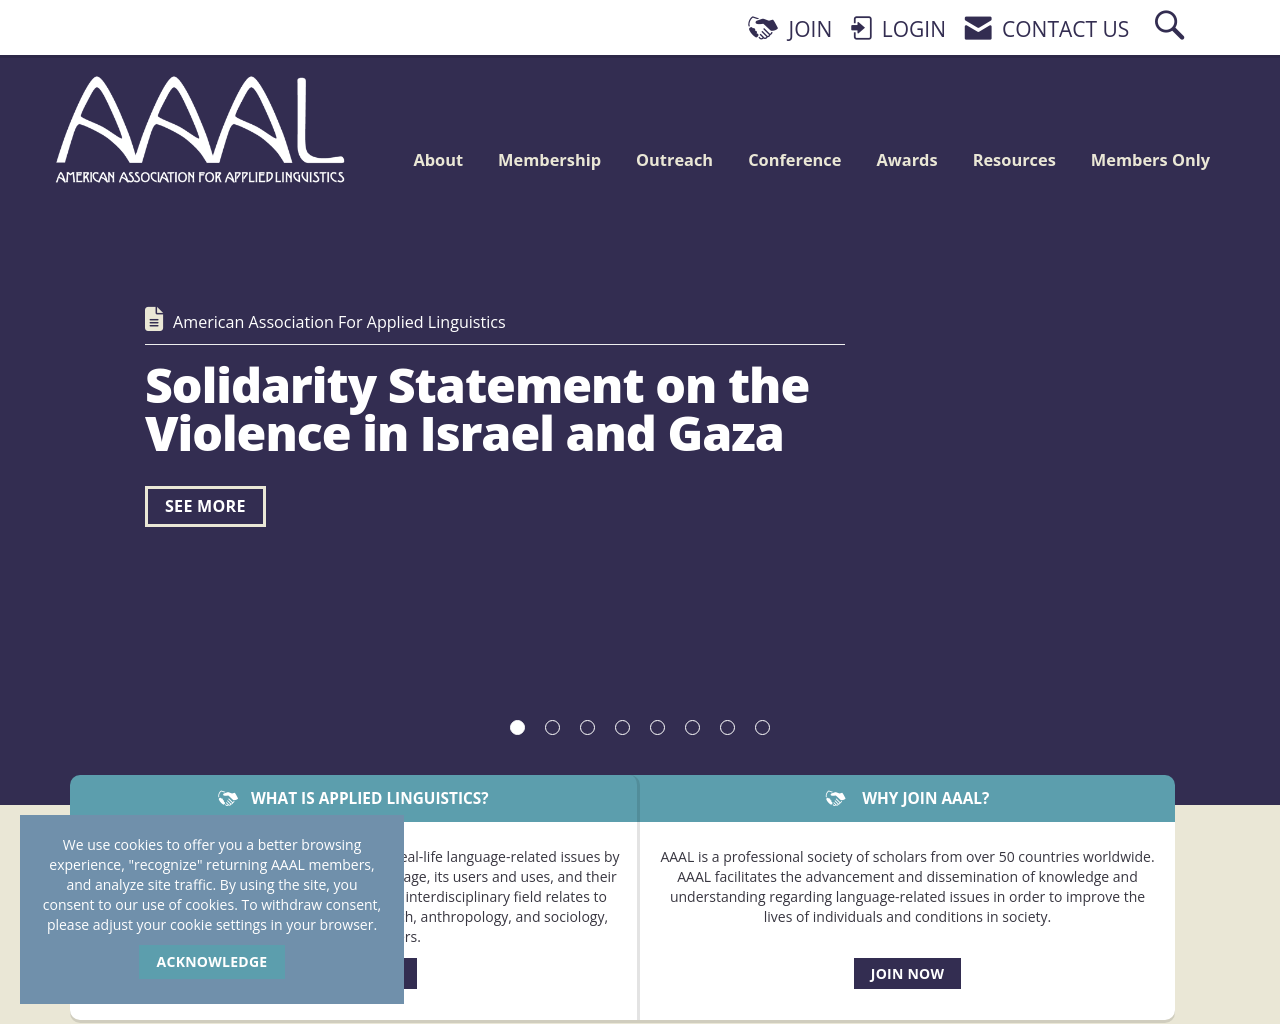 aaal.org